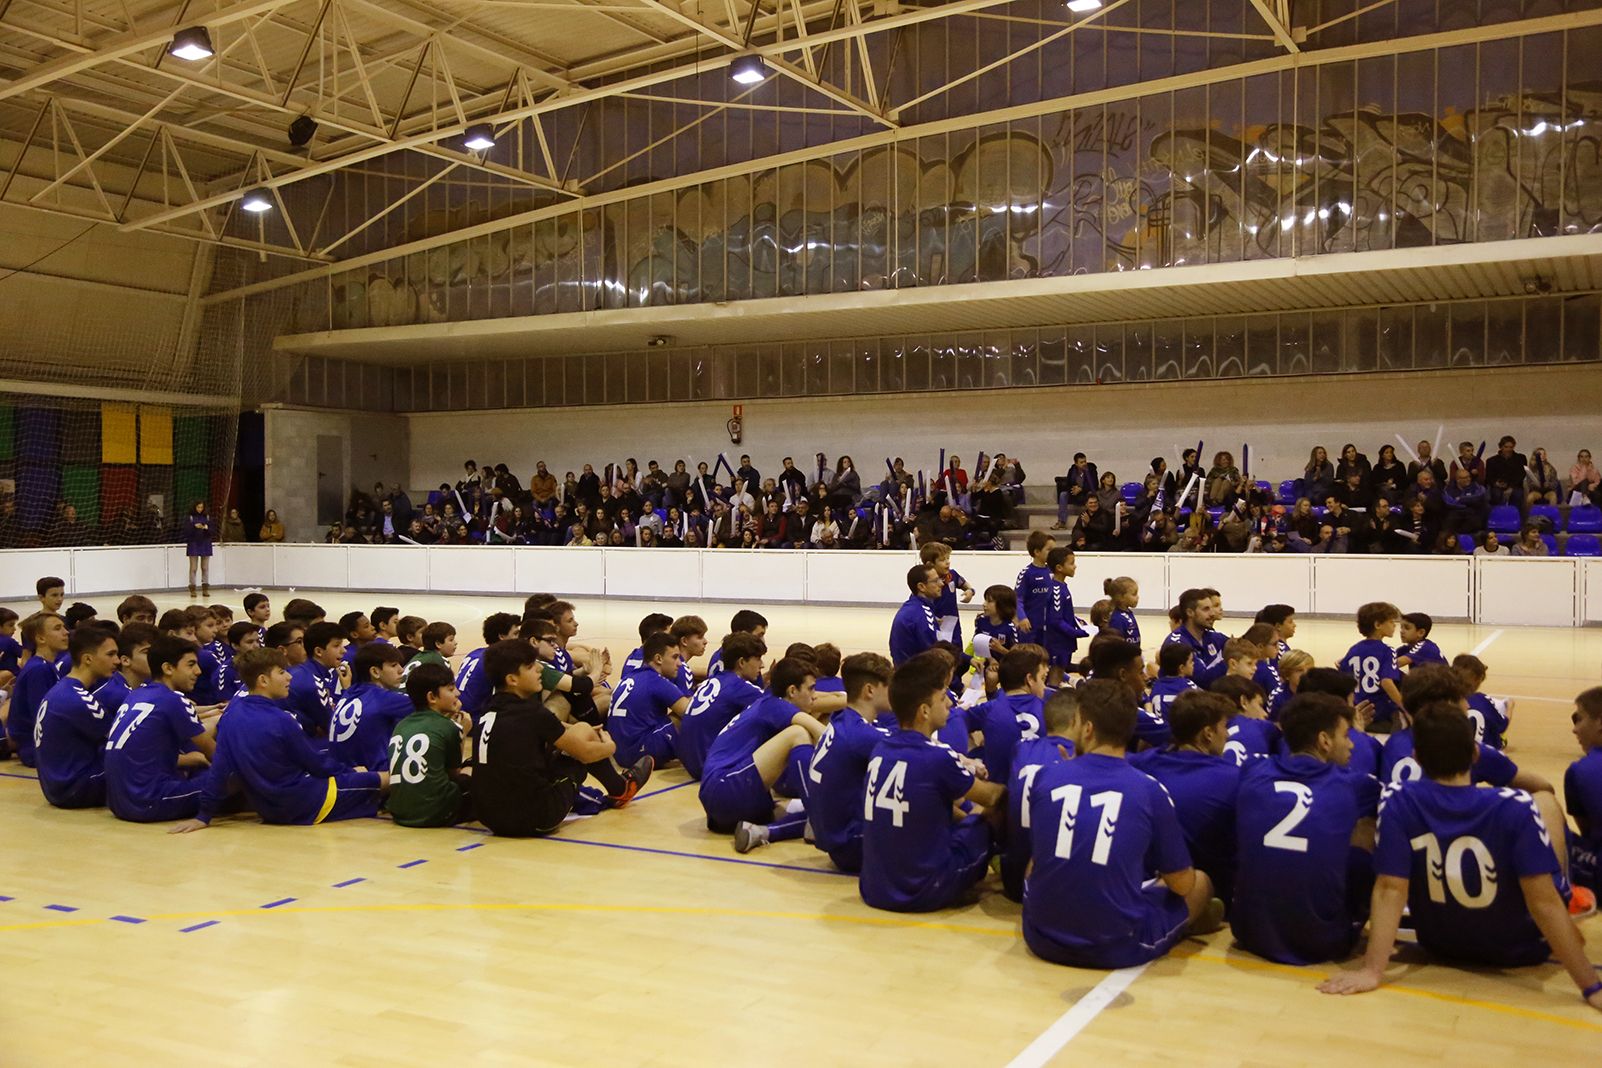 Presentació d'equips de l'Olimpyc la Floresta de futbol sala. FOTO: Anna Bassa